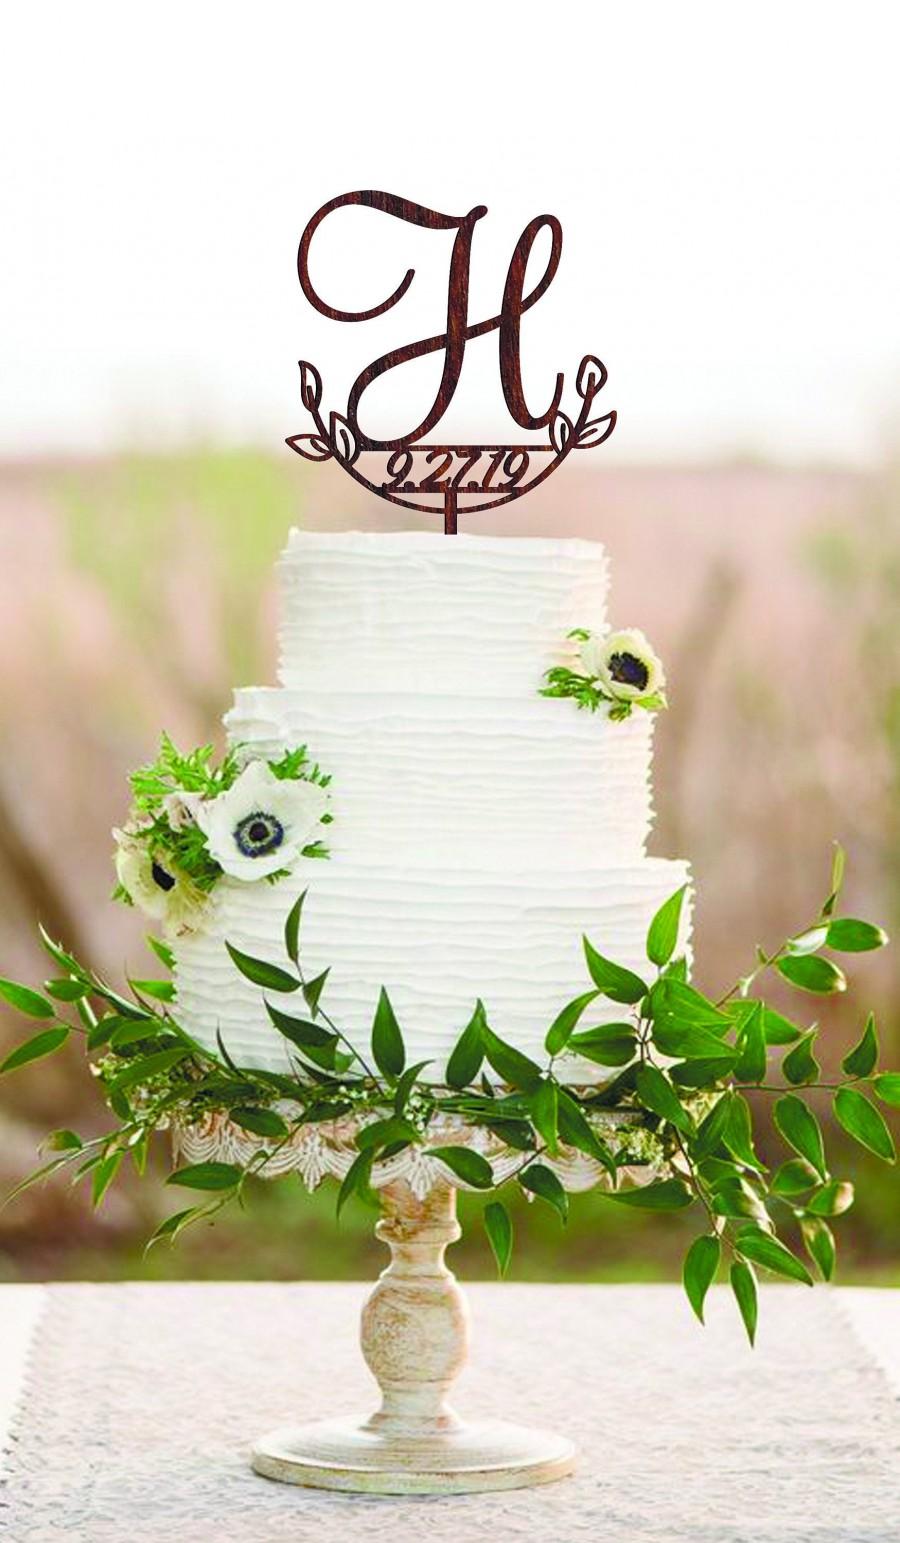 Hochzeit - H cake topper date Wedding cake topper H Cake toppers for wedding Initial cake topper Wood monogram cake topper Rustic cake topper wedding H